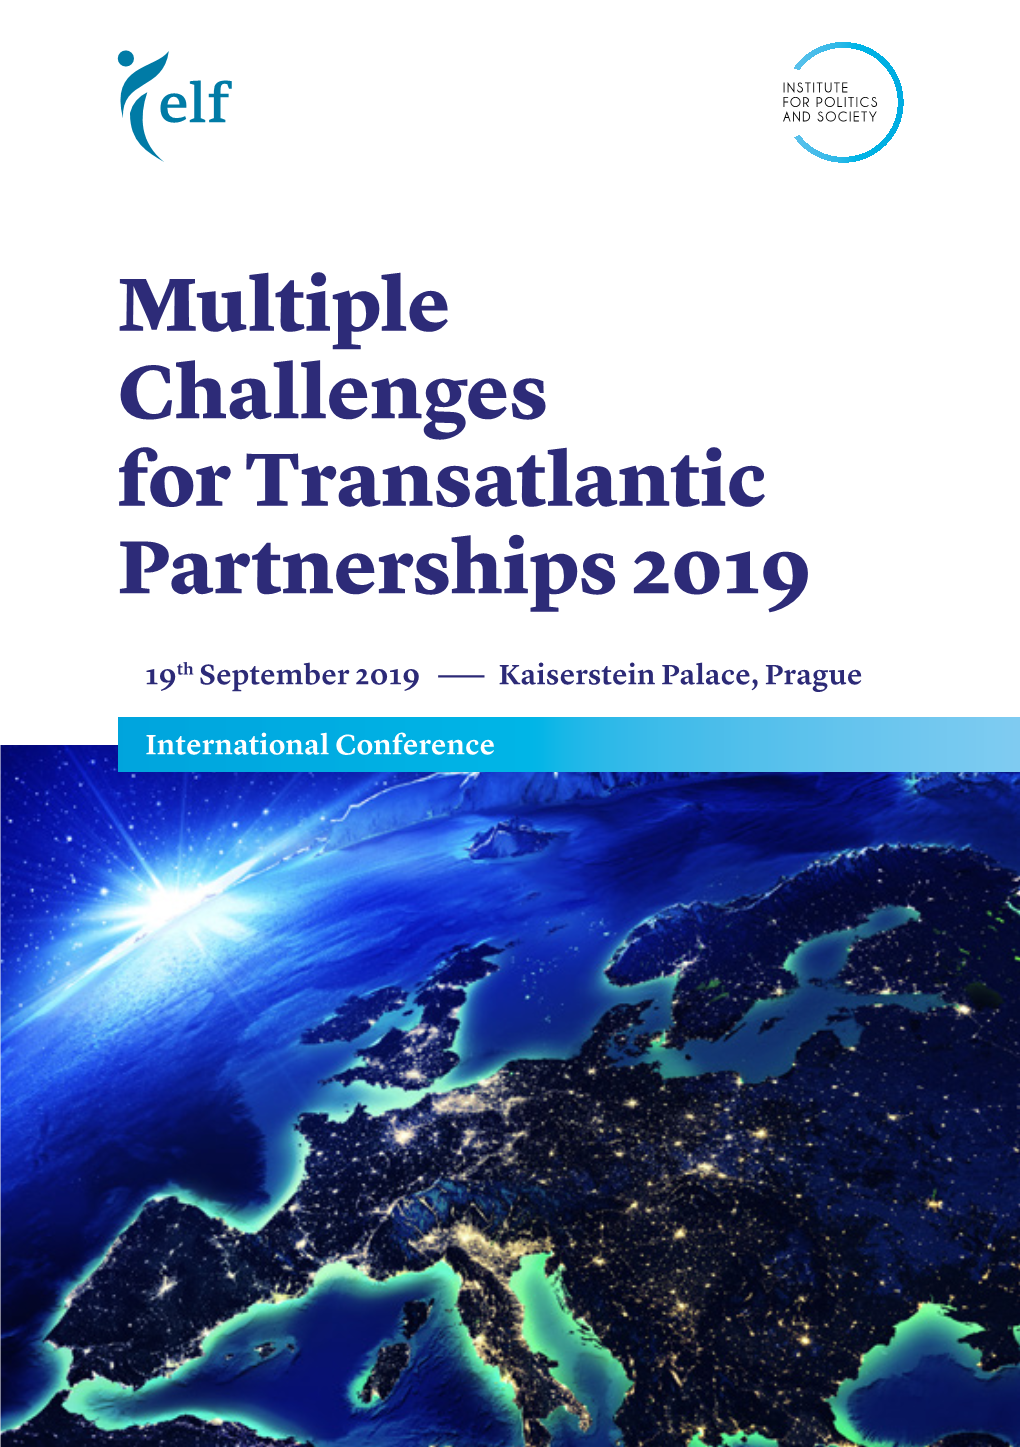 Multiple Challenges for Transatlantic Partnerships 2019